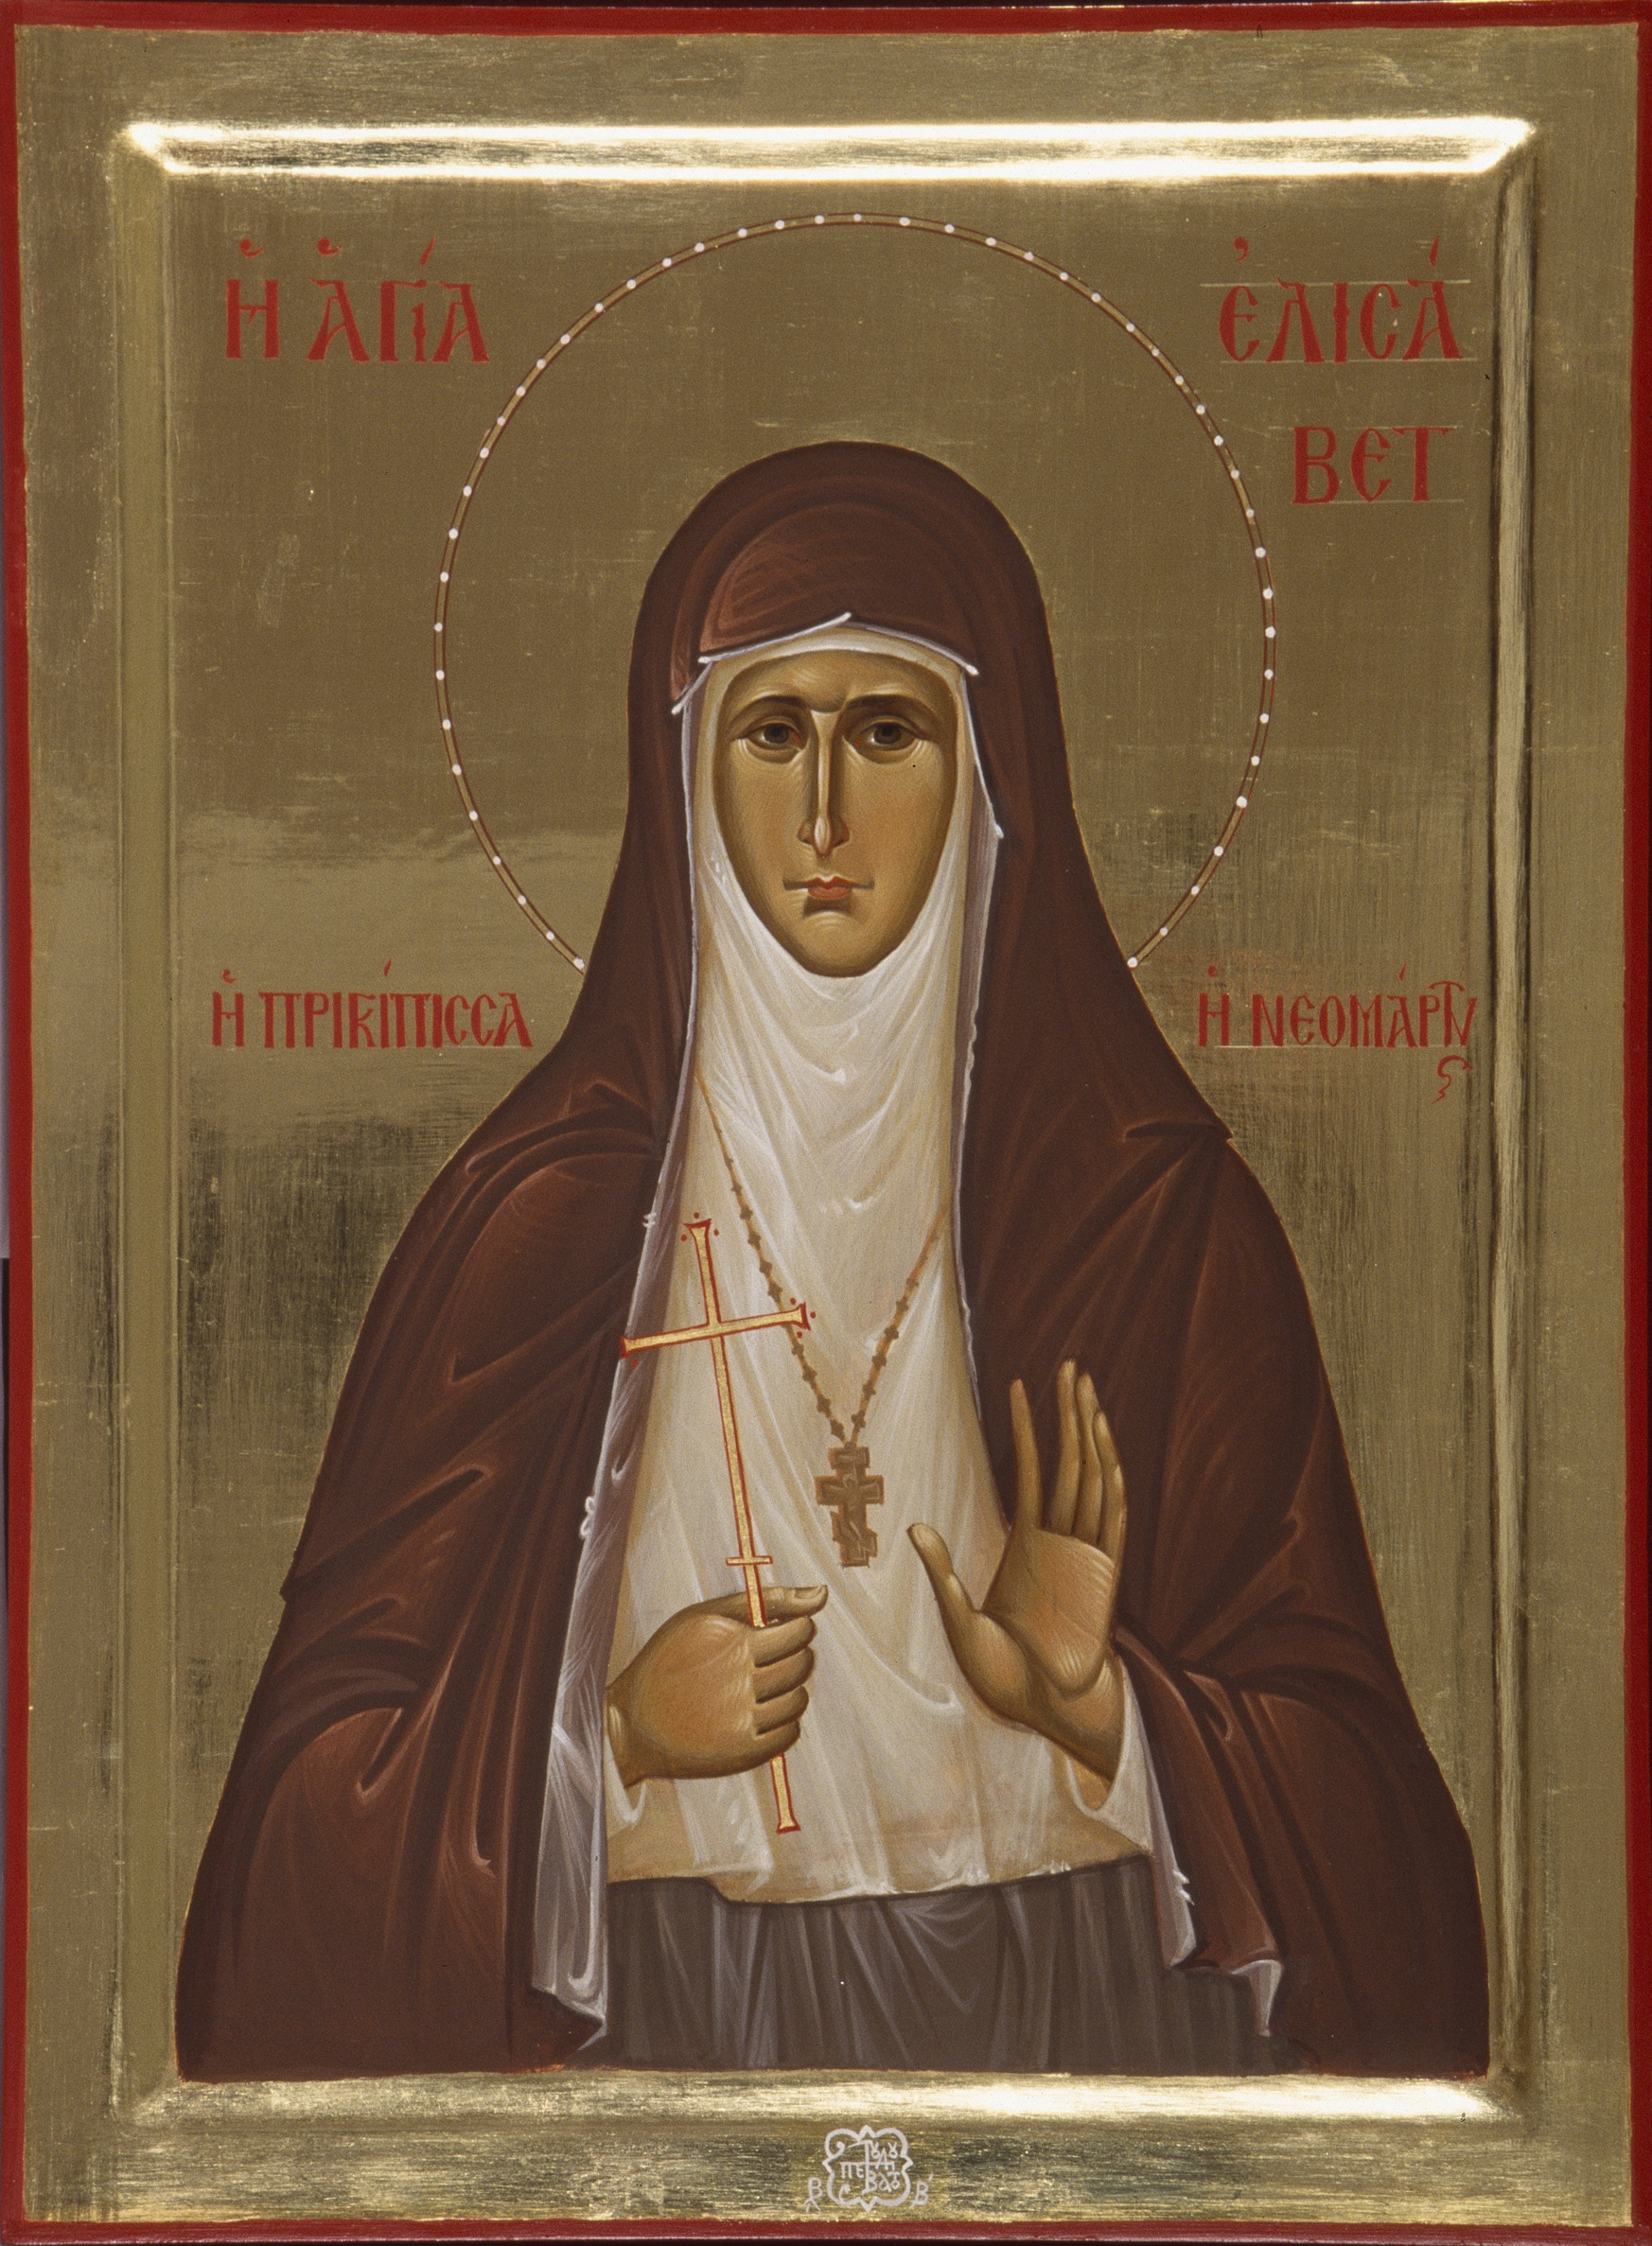 Η αγία νεομάρτυς Ελισάβετ. Εικόνα του αγιογραφείου της Ιεράς Μεγίστης Μονής Βατοπαιδίου.